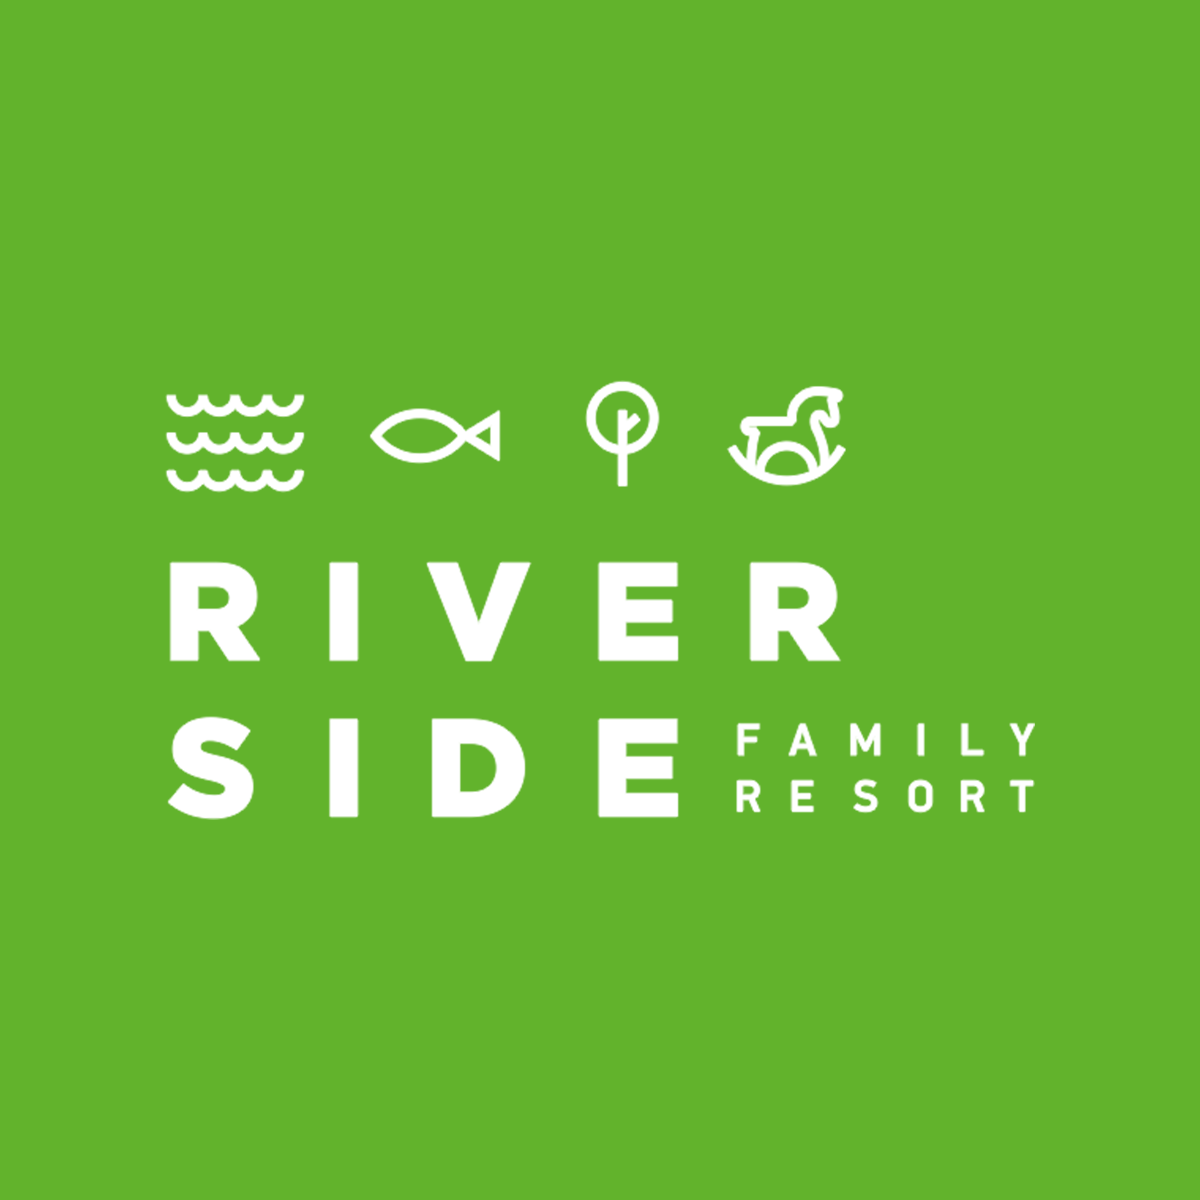 фото: логотип комплекса для активного отдыха RiverSide